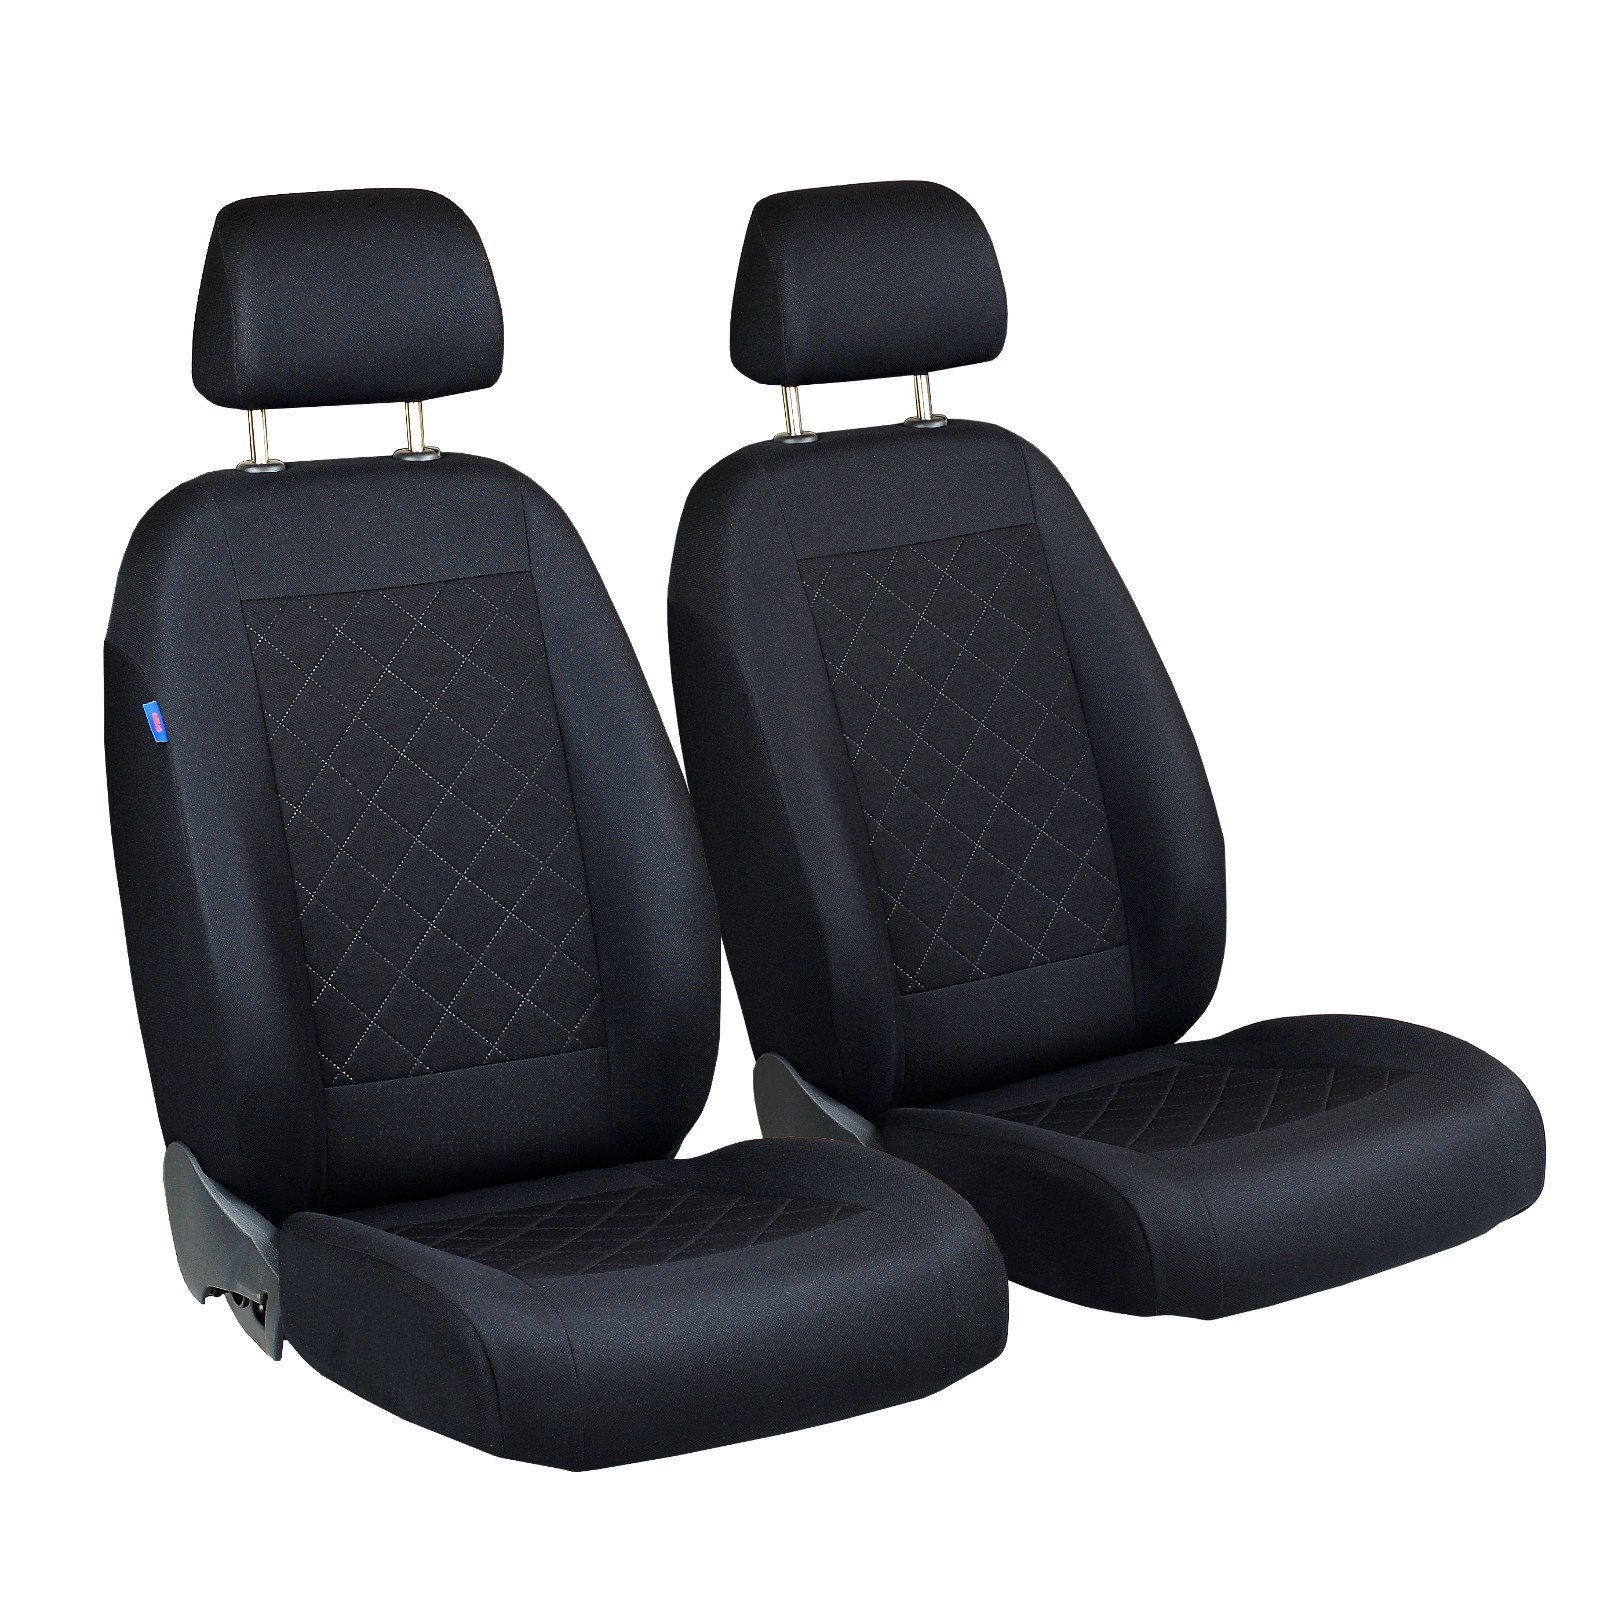 ix20 Vorne Sitzbezüge - für Fahrer und Beifahrer - Farbe Premium Schwarz gepresstes Karomuster